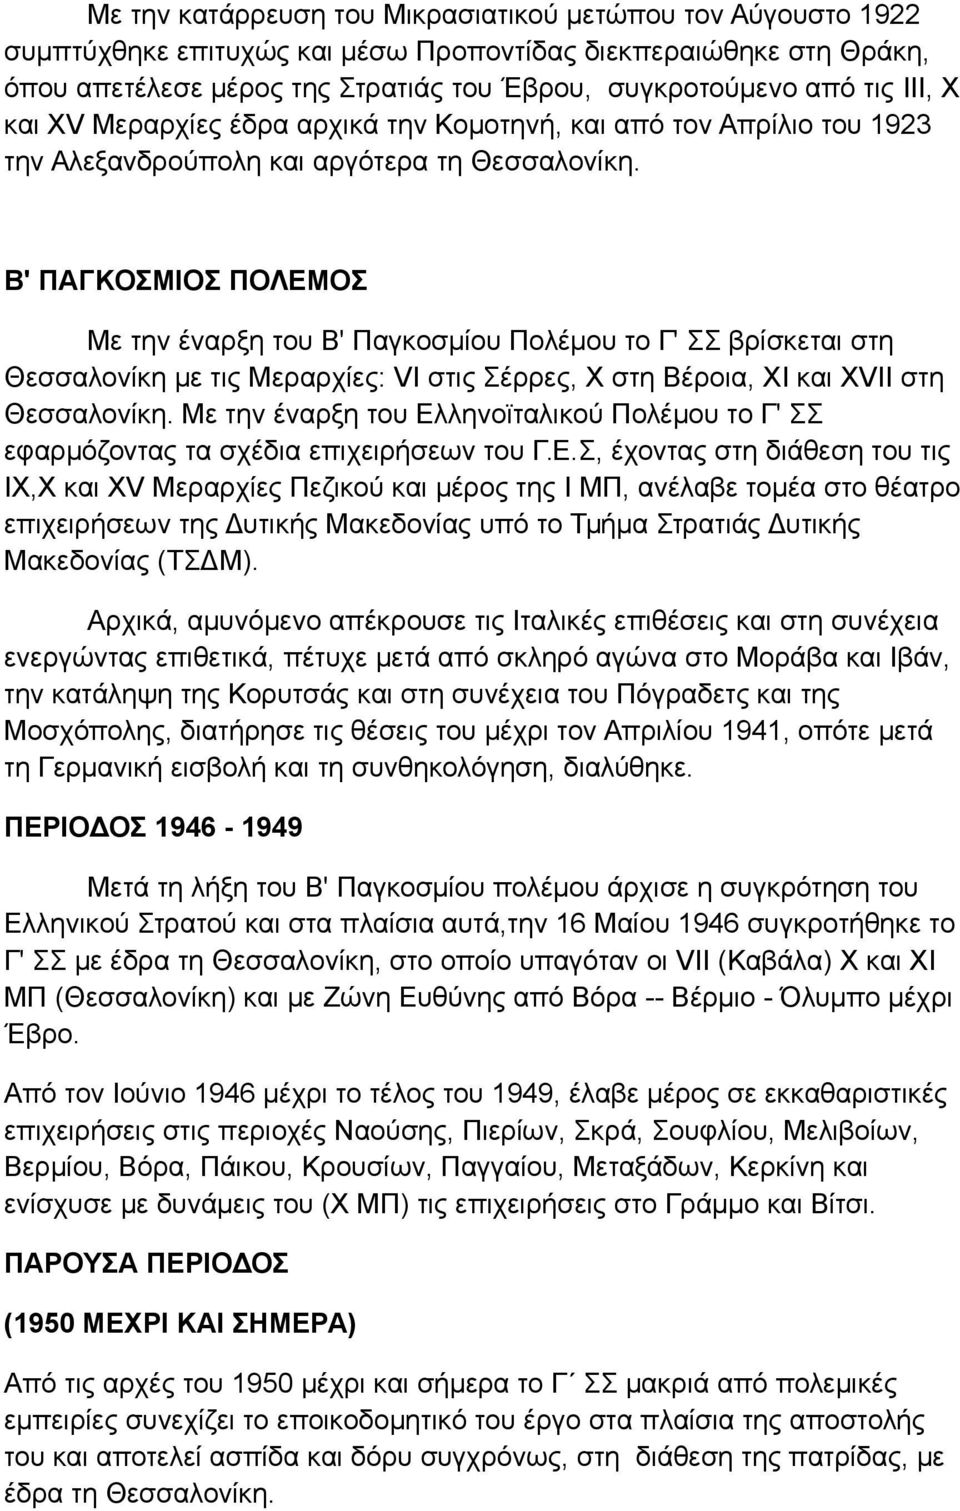 Β' ΠΑΓΚΟΣΜΙΟΣ ΠΟΛΕΜΟΣ Με την έναρξη του Β' Παγκοσμίου Πολέμου το Γ' ΣΣ βρίσκεται στη Θεσσαλονίκη με τις Μεραρχίες: VI στις Σέρρες, Χ στη Βέροια, XI και XVII στη Θεσσαλονίκη.